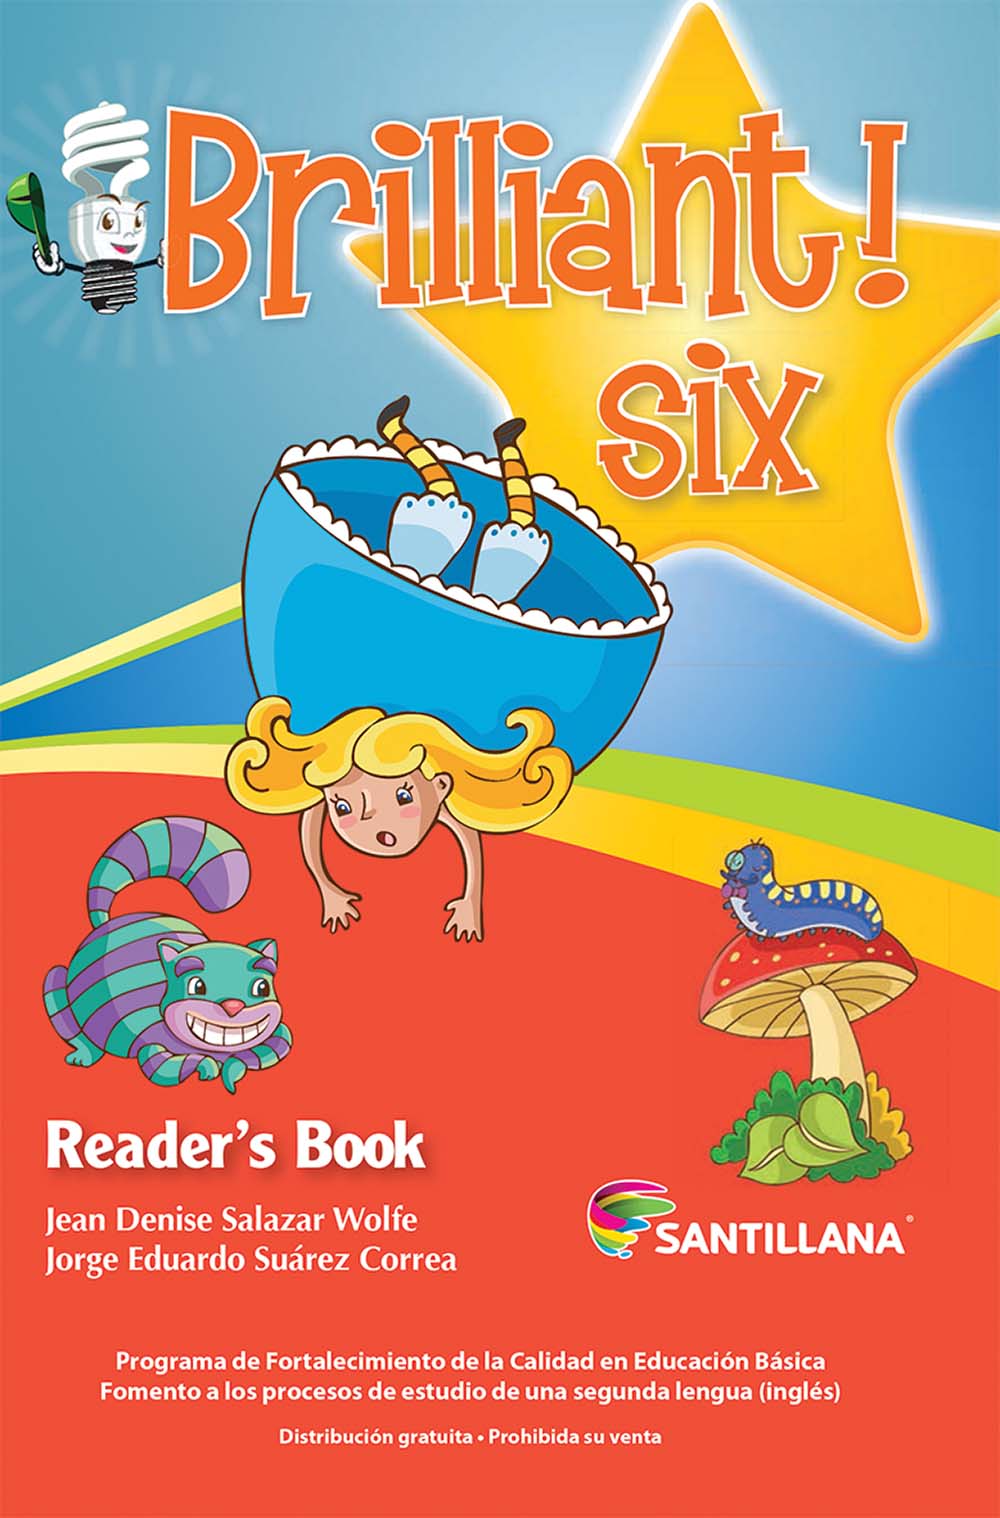 Brilliant! Six Libro de Lectura, Editorial: Santillana, Nivel: Primaria, Grado: 6